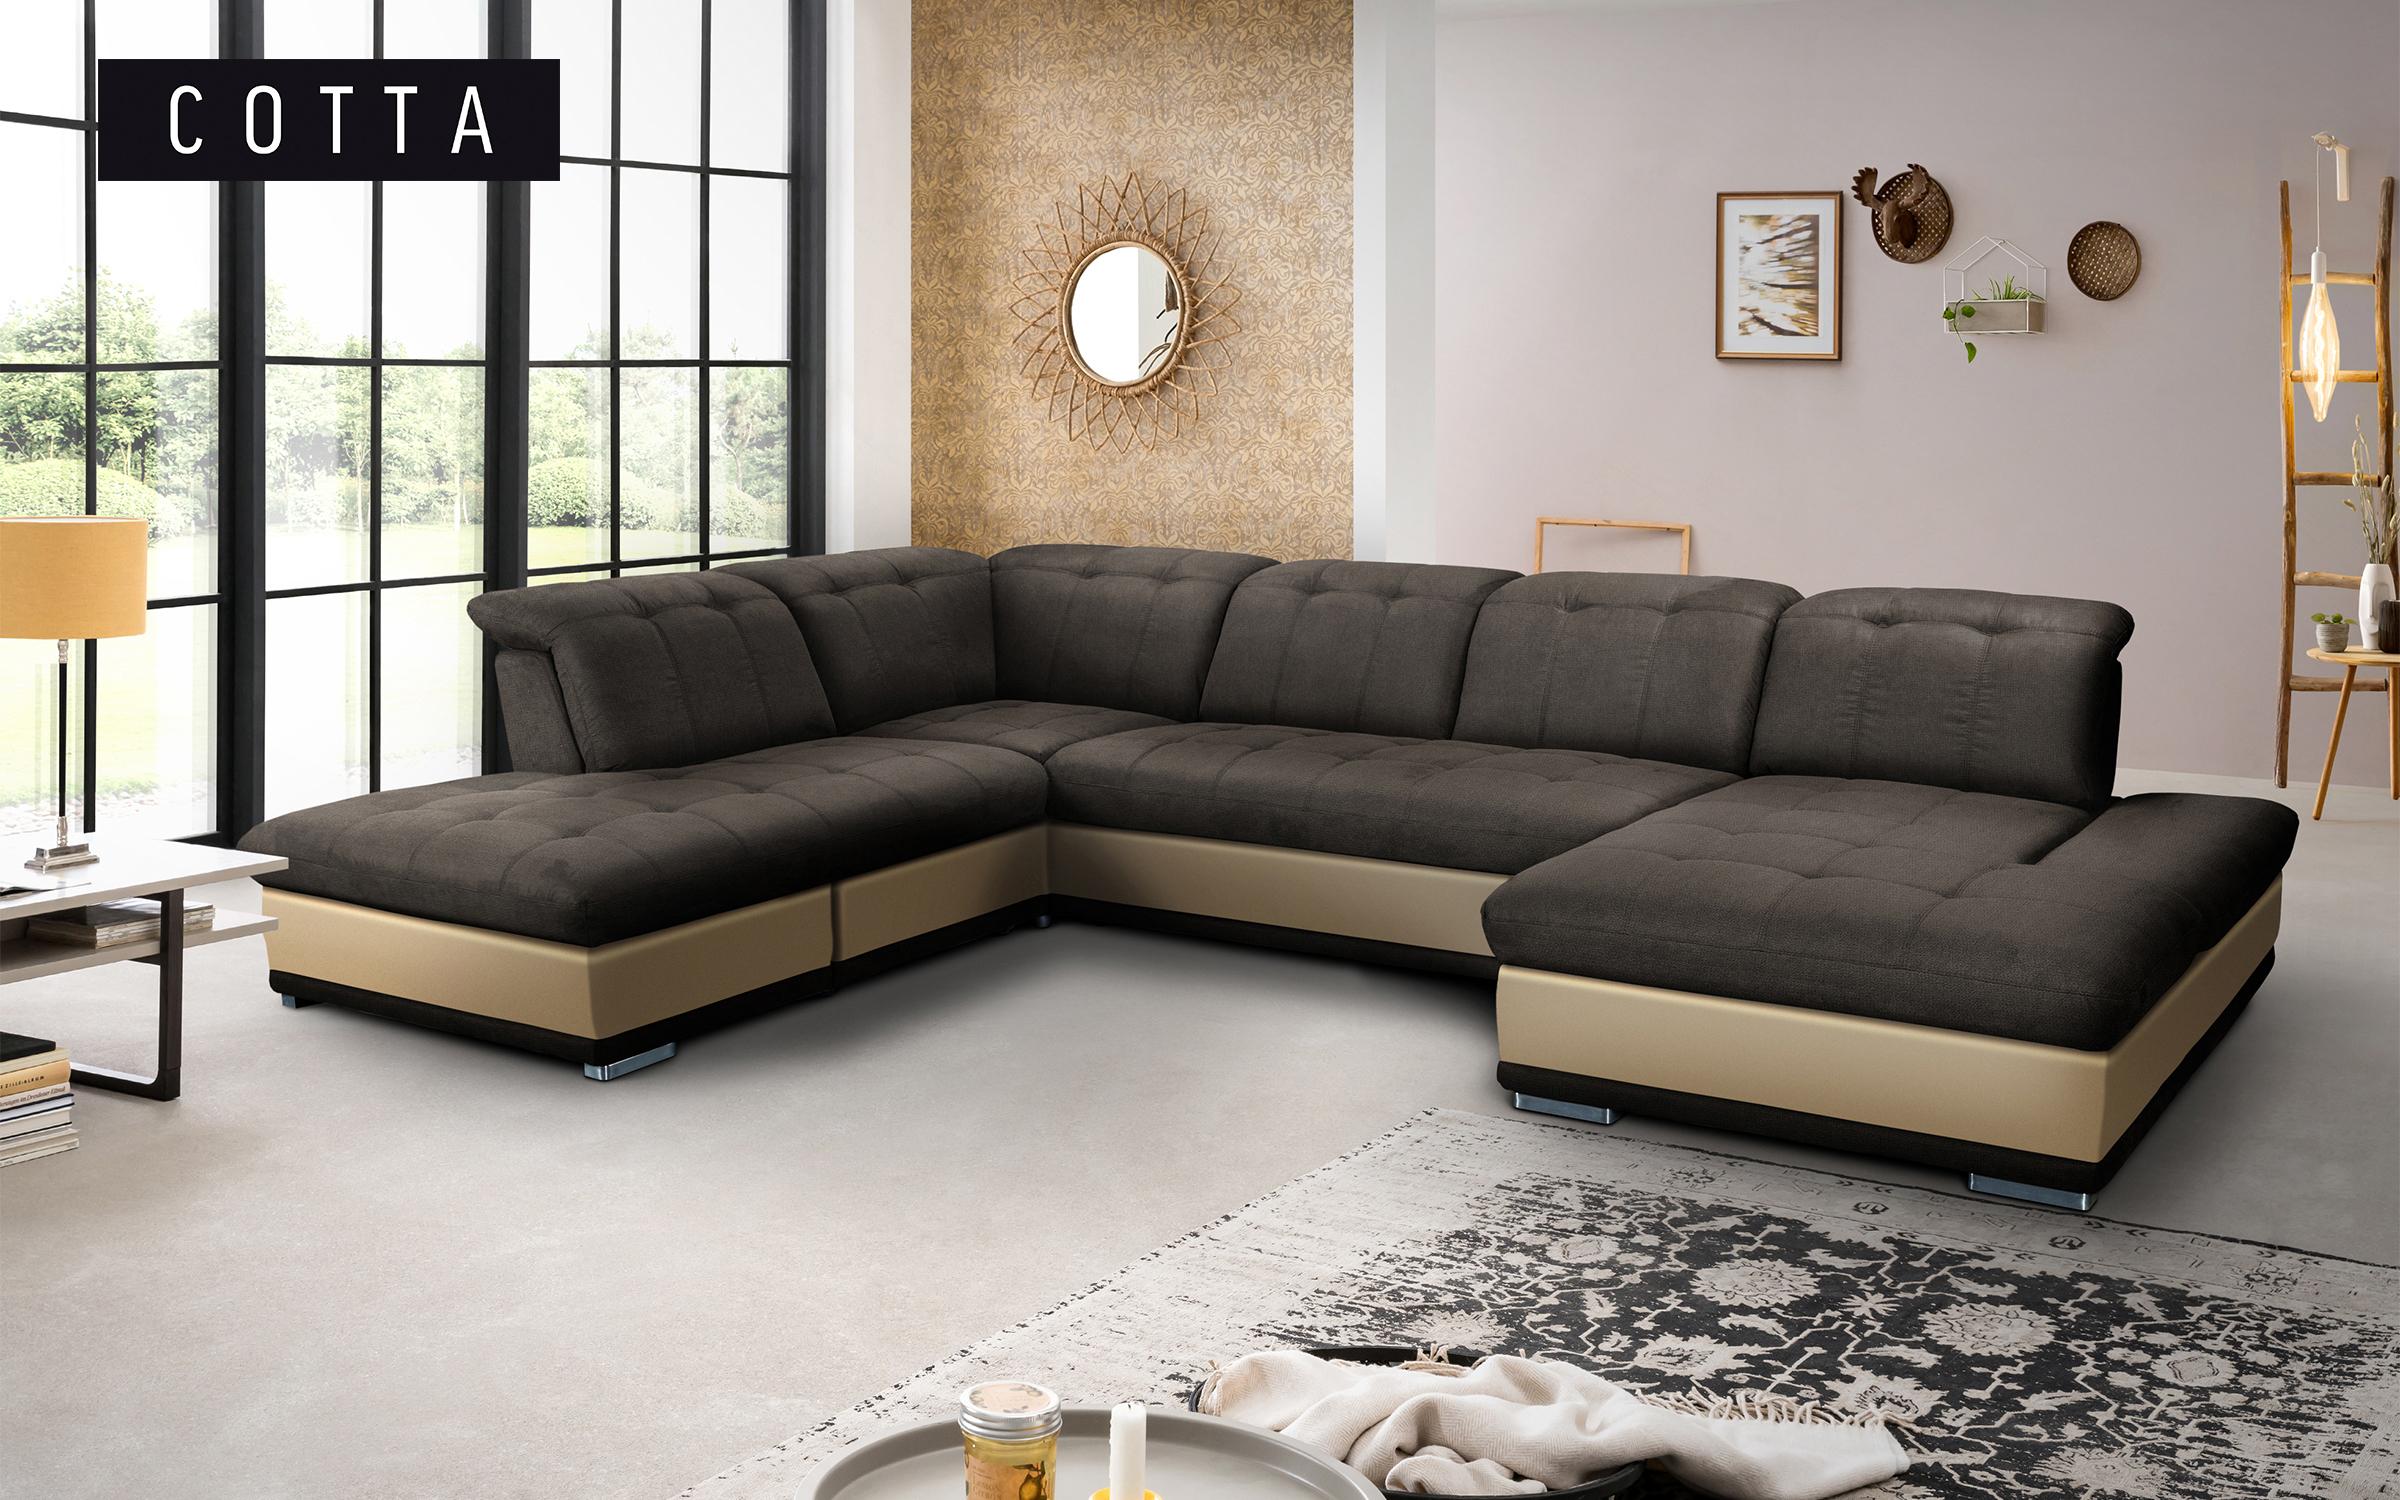 Γωνιακός καναπές Π σχήμα Balero, σκούρο καφέ + μπεζ  1